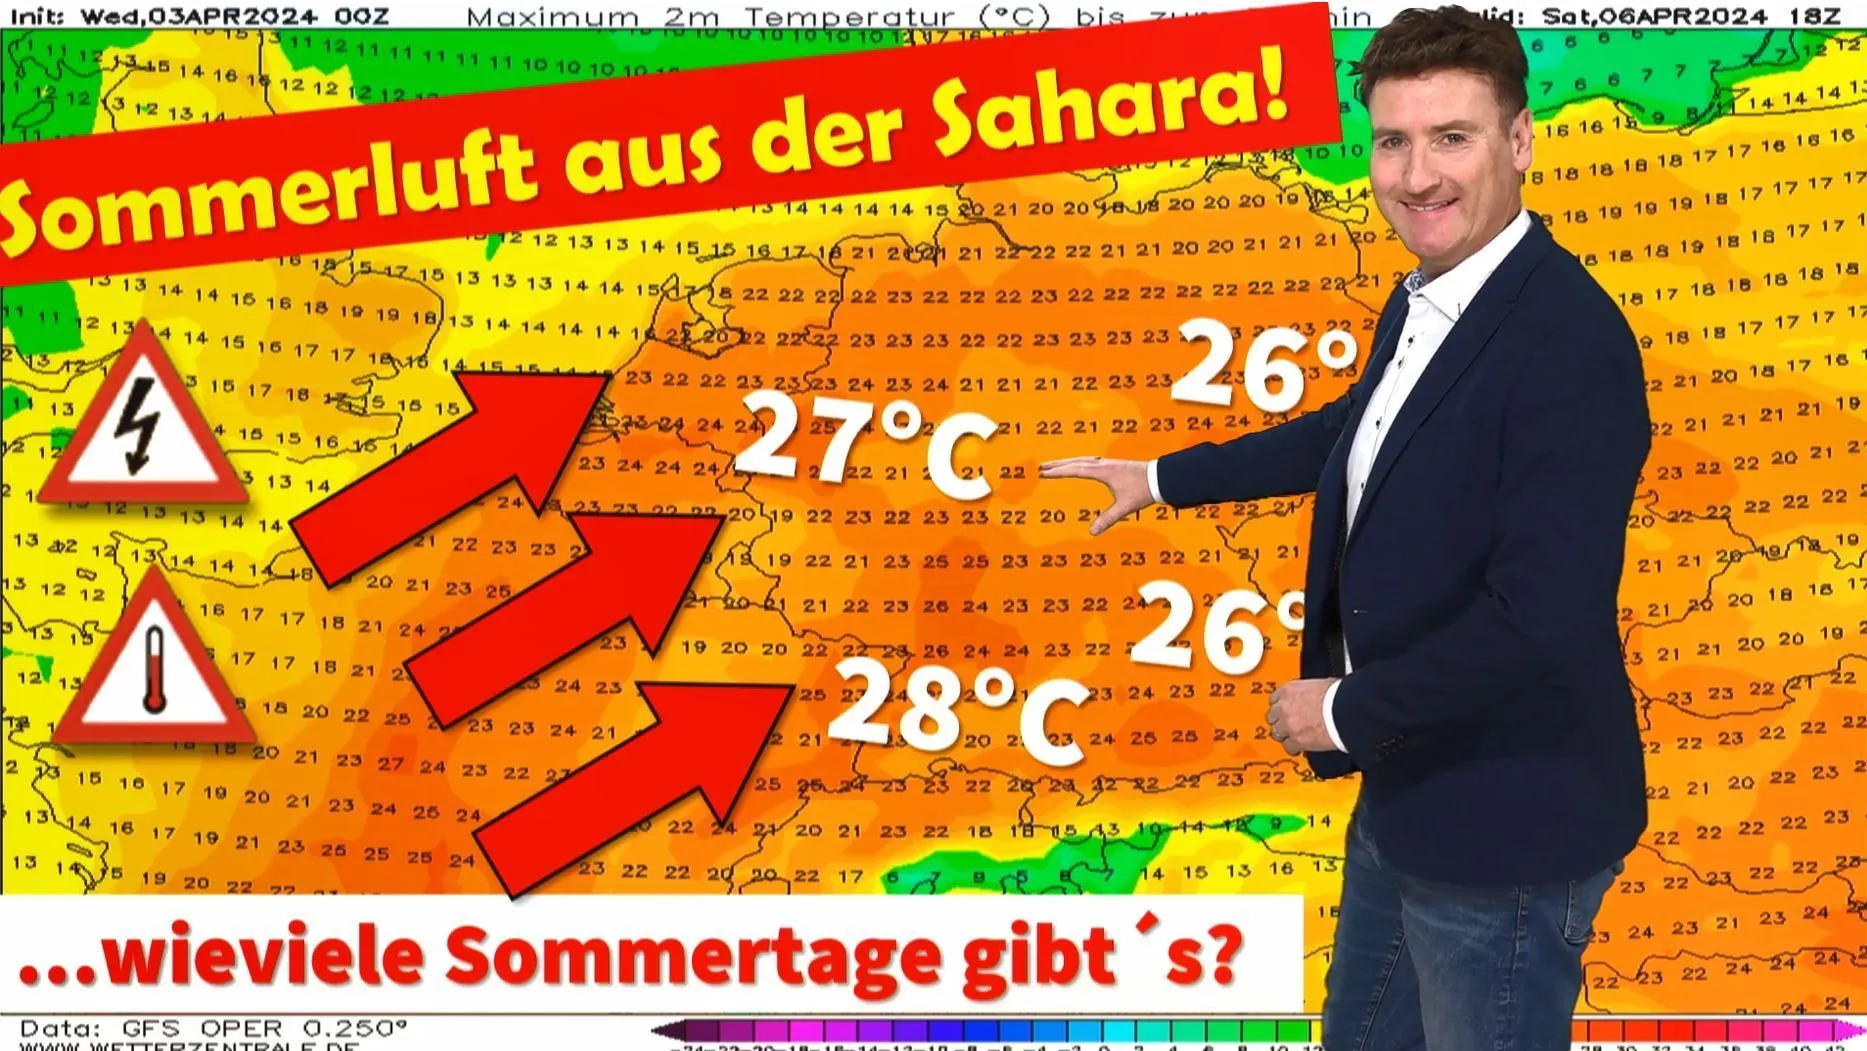 Météo pour les plus de 25 ans à partir de samedi ! Incroyable : un temps estival au début du mois d'avril ! Combien de temps le temps restera-t-il chaud et estival en Allemagne ?